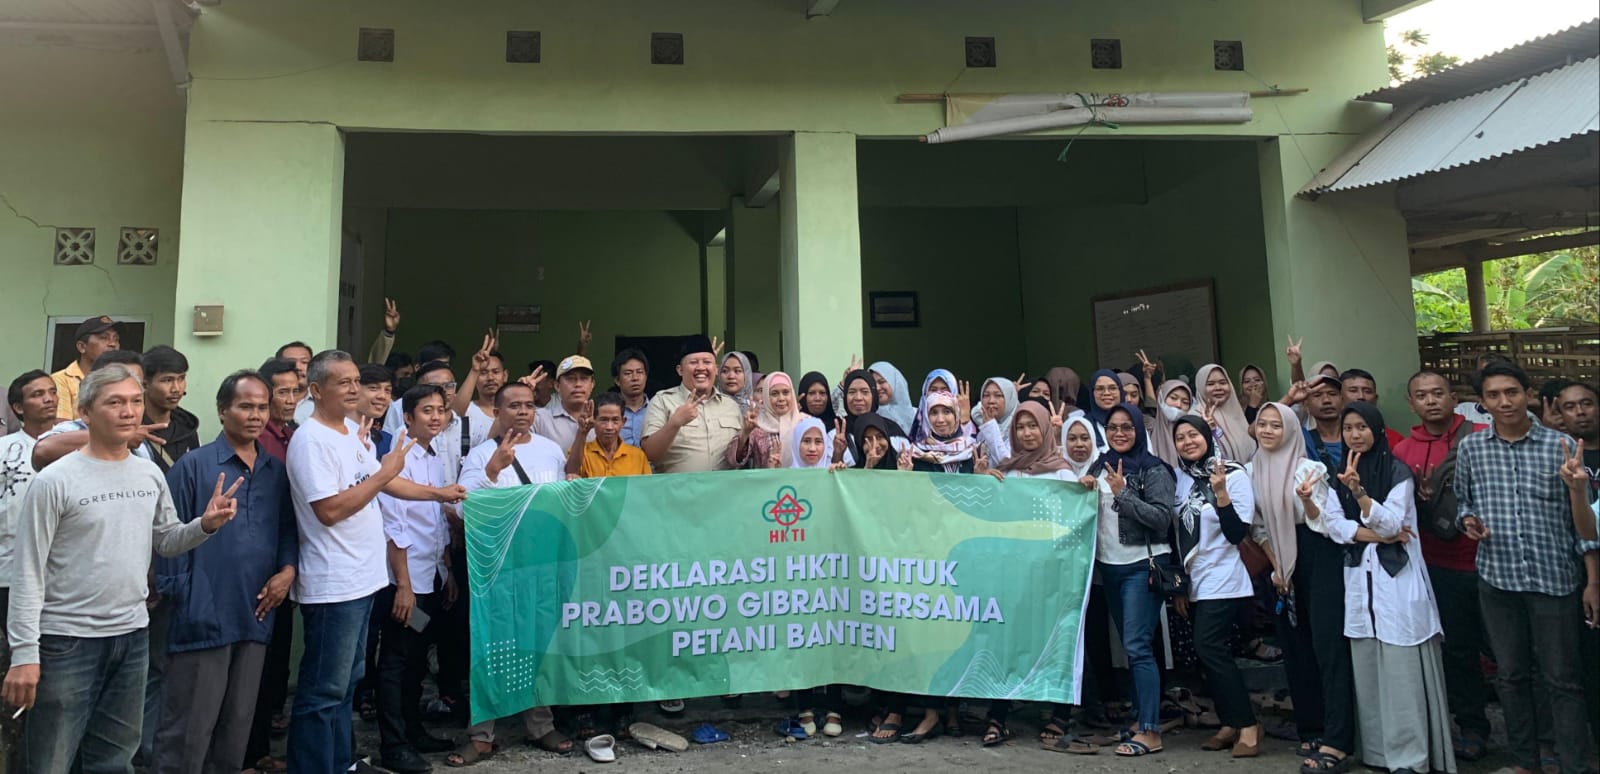 HKTI Galang Petani Banten Dukung Prabowo-Gibran